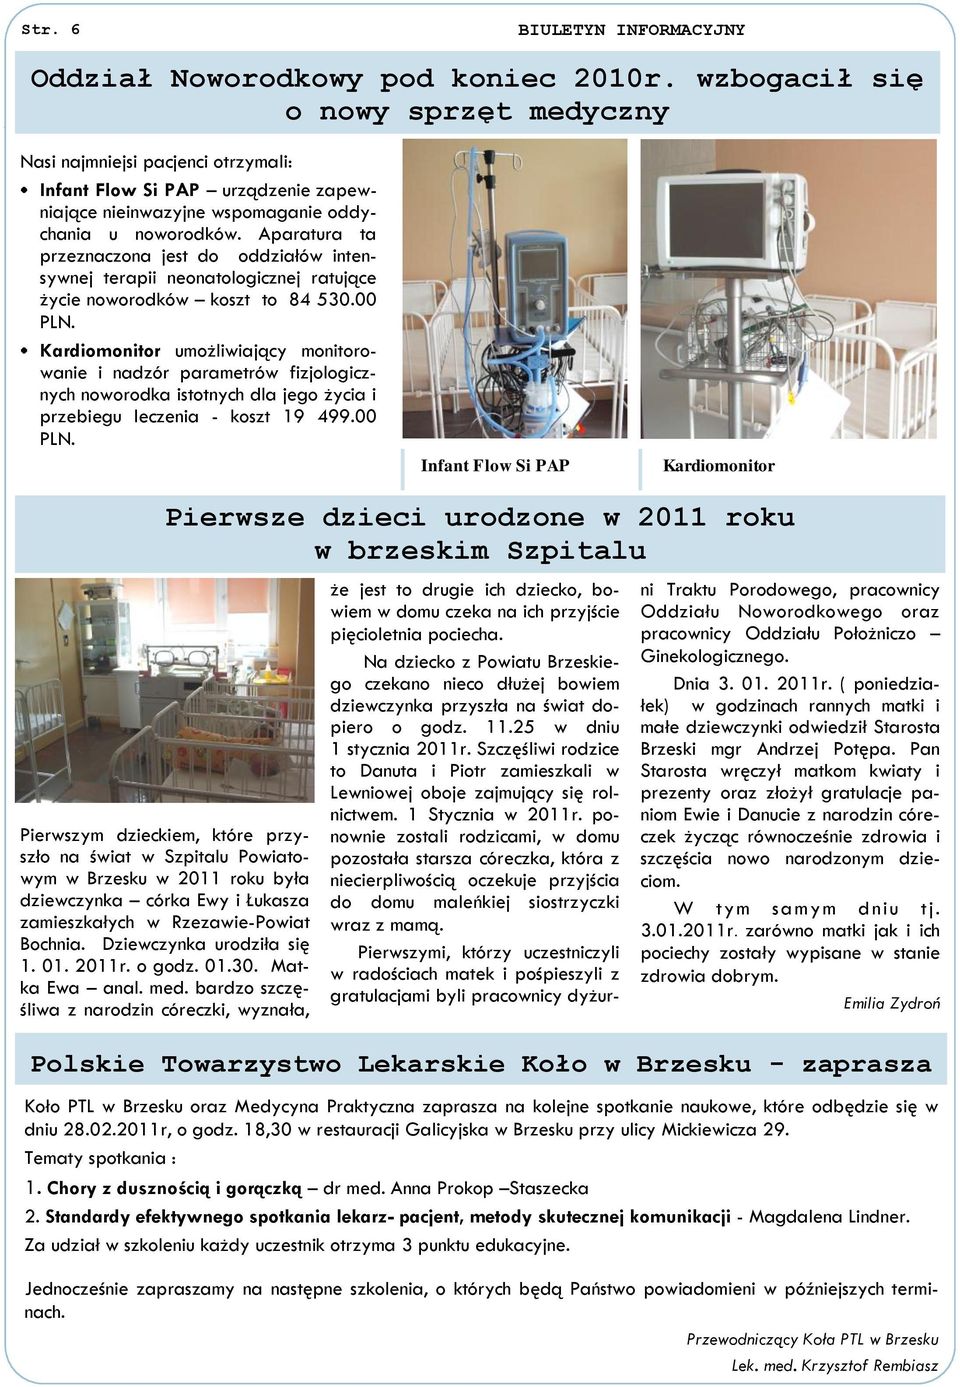 Aparatura ta przeznaczona jest do oddziałów intensywnej terapii neonatologicznej ratujące życie noworodków koszt to 84 530.00 PLN.